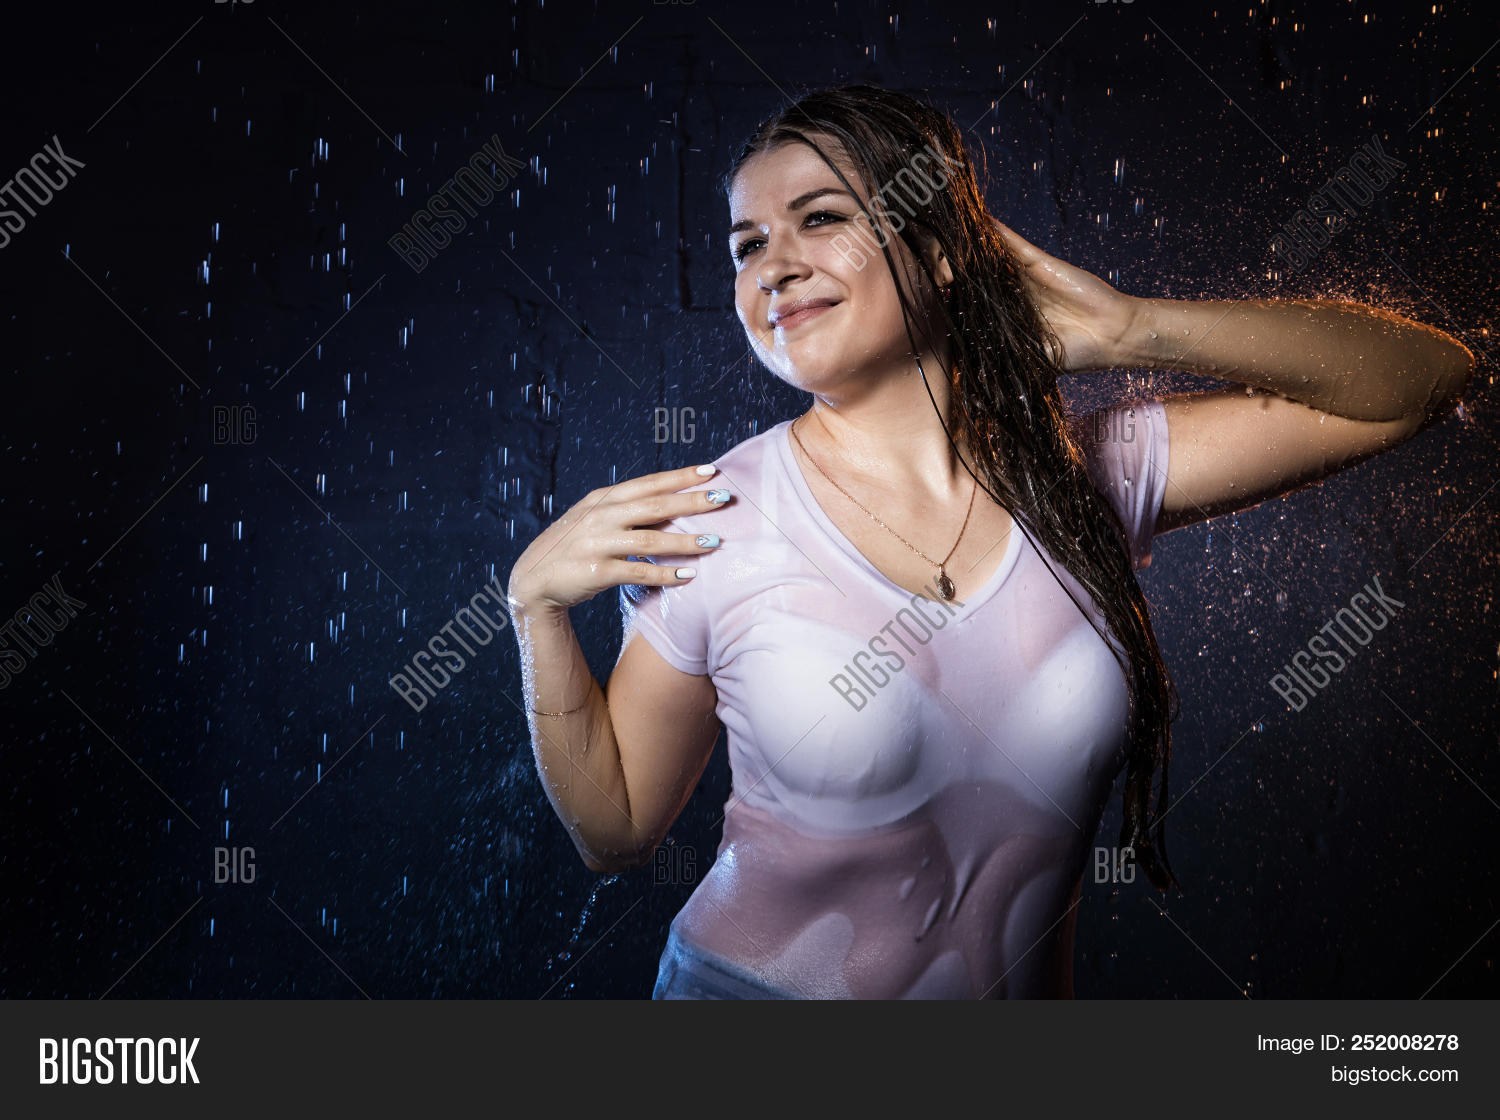 Lush Teen Boobs - Lush Boobs in a Wet T-Shirt (55 photos) - sex eporner pics